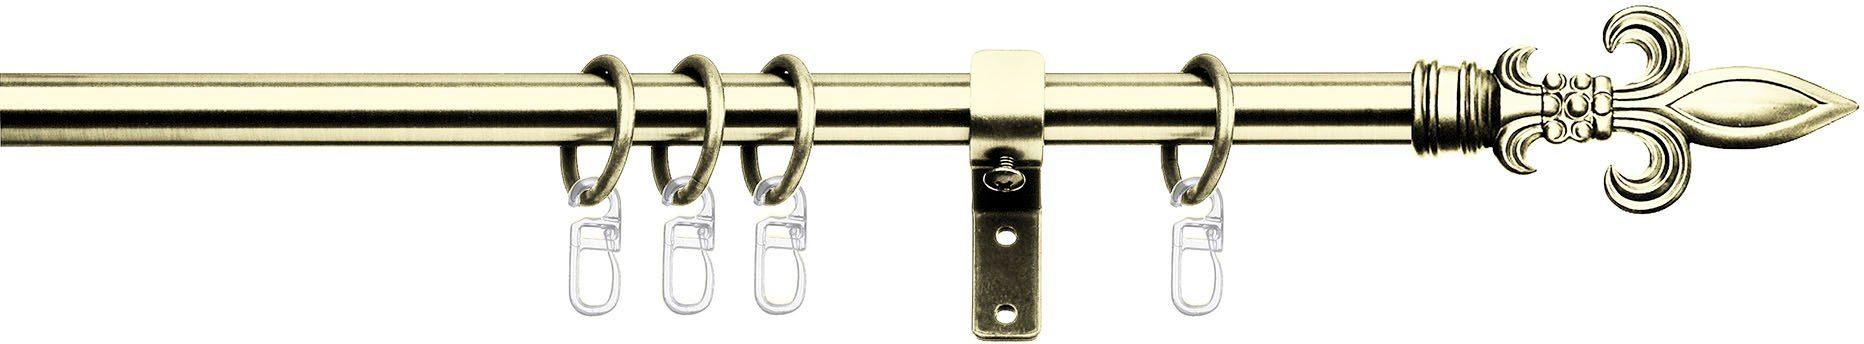 Gardinenstange Lucca, indeko, Ø 16 mm, 1-läufig, Fixmaß, verschraubt, Stahl, Komplett-Set inkl. Ringen und Montagematerial messingfarben/goldfarben